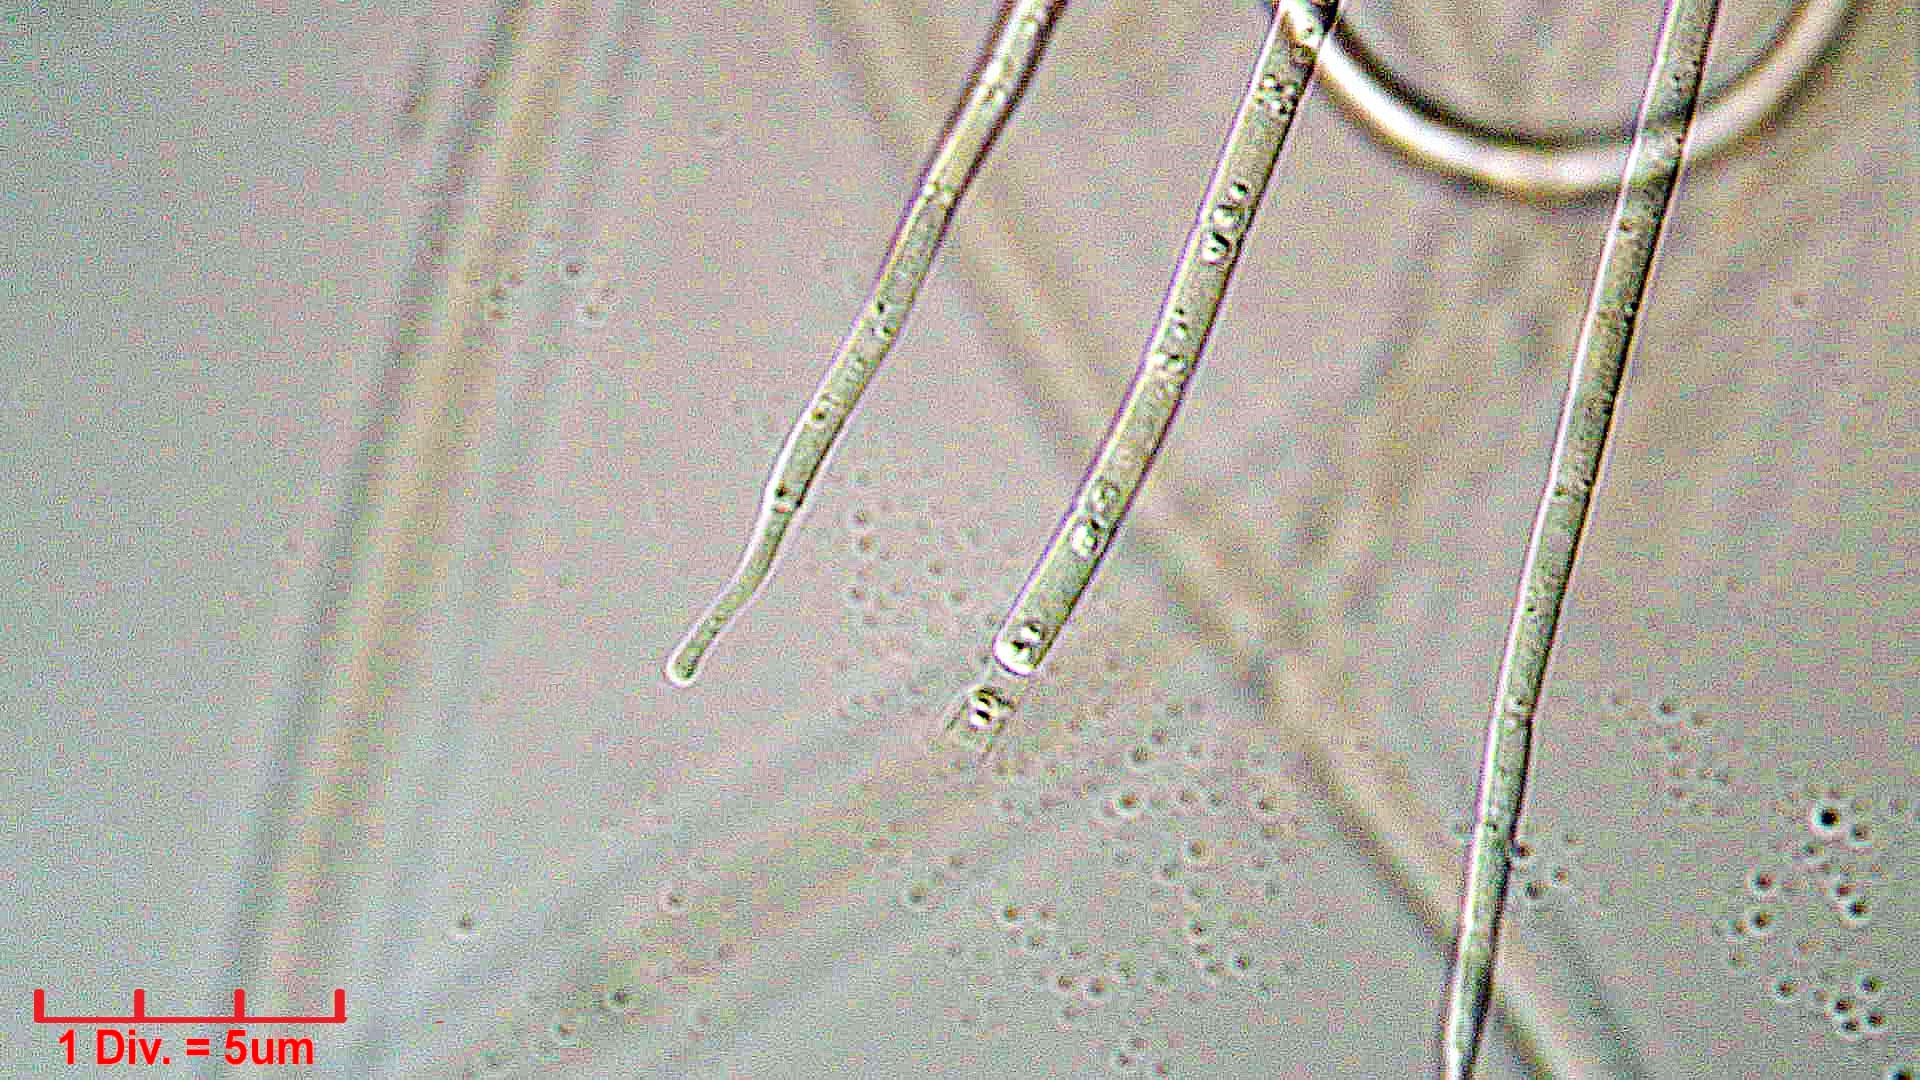 ././Cyanobacteria/Oscillatoriales/Coleofasciculaceae/Geitlerinema/splendidum/294.jpg